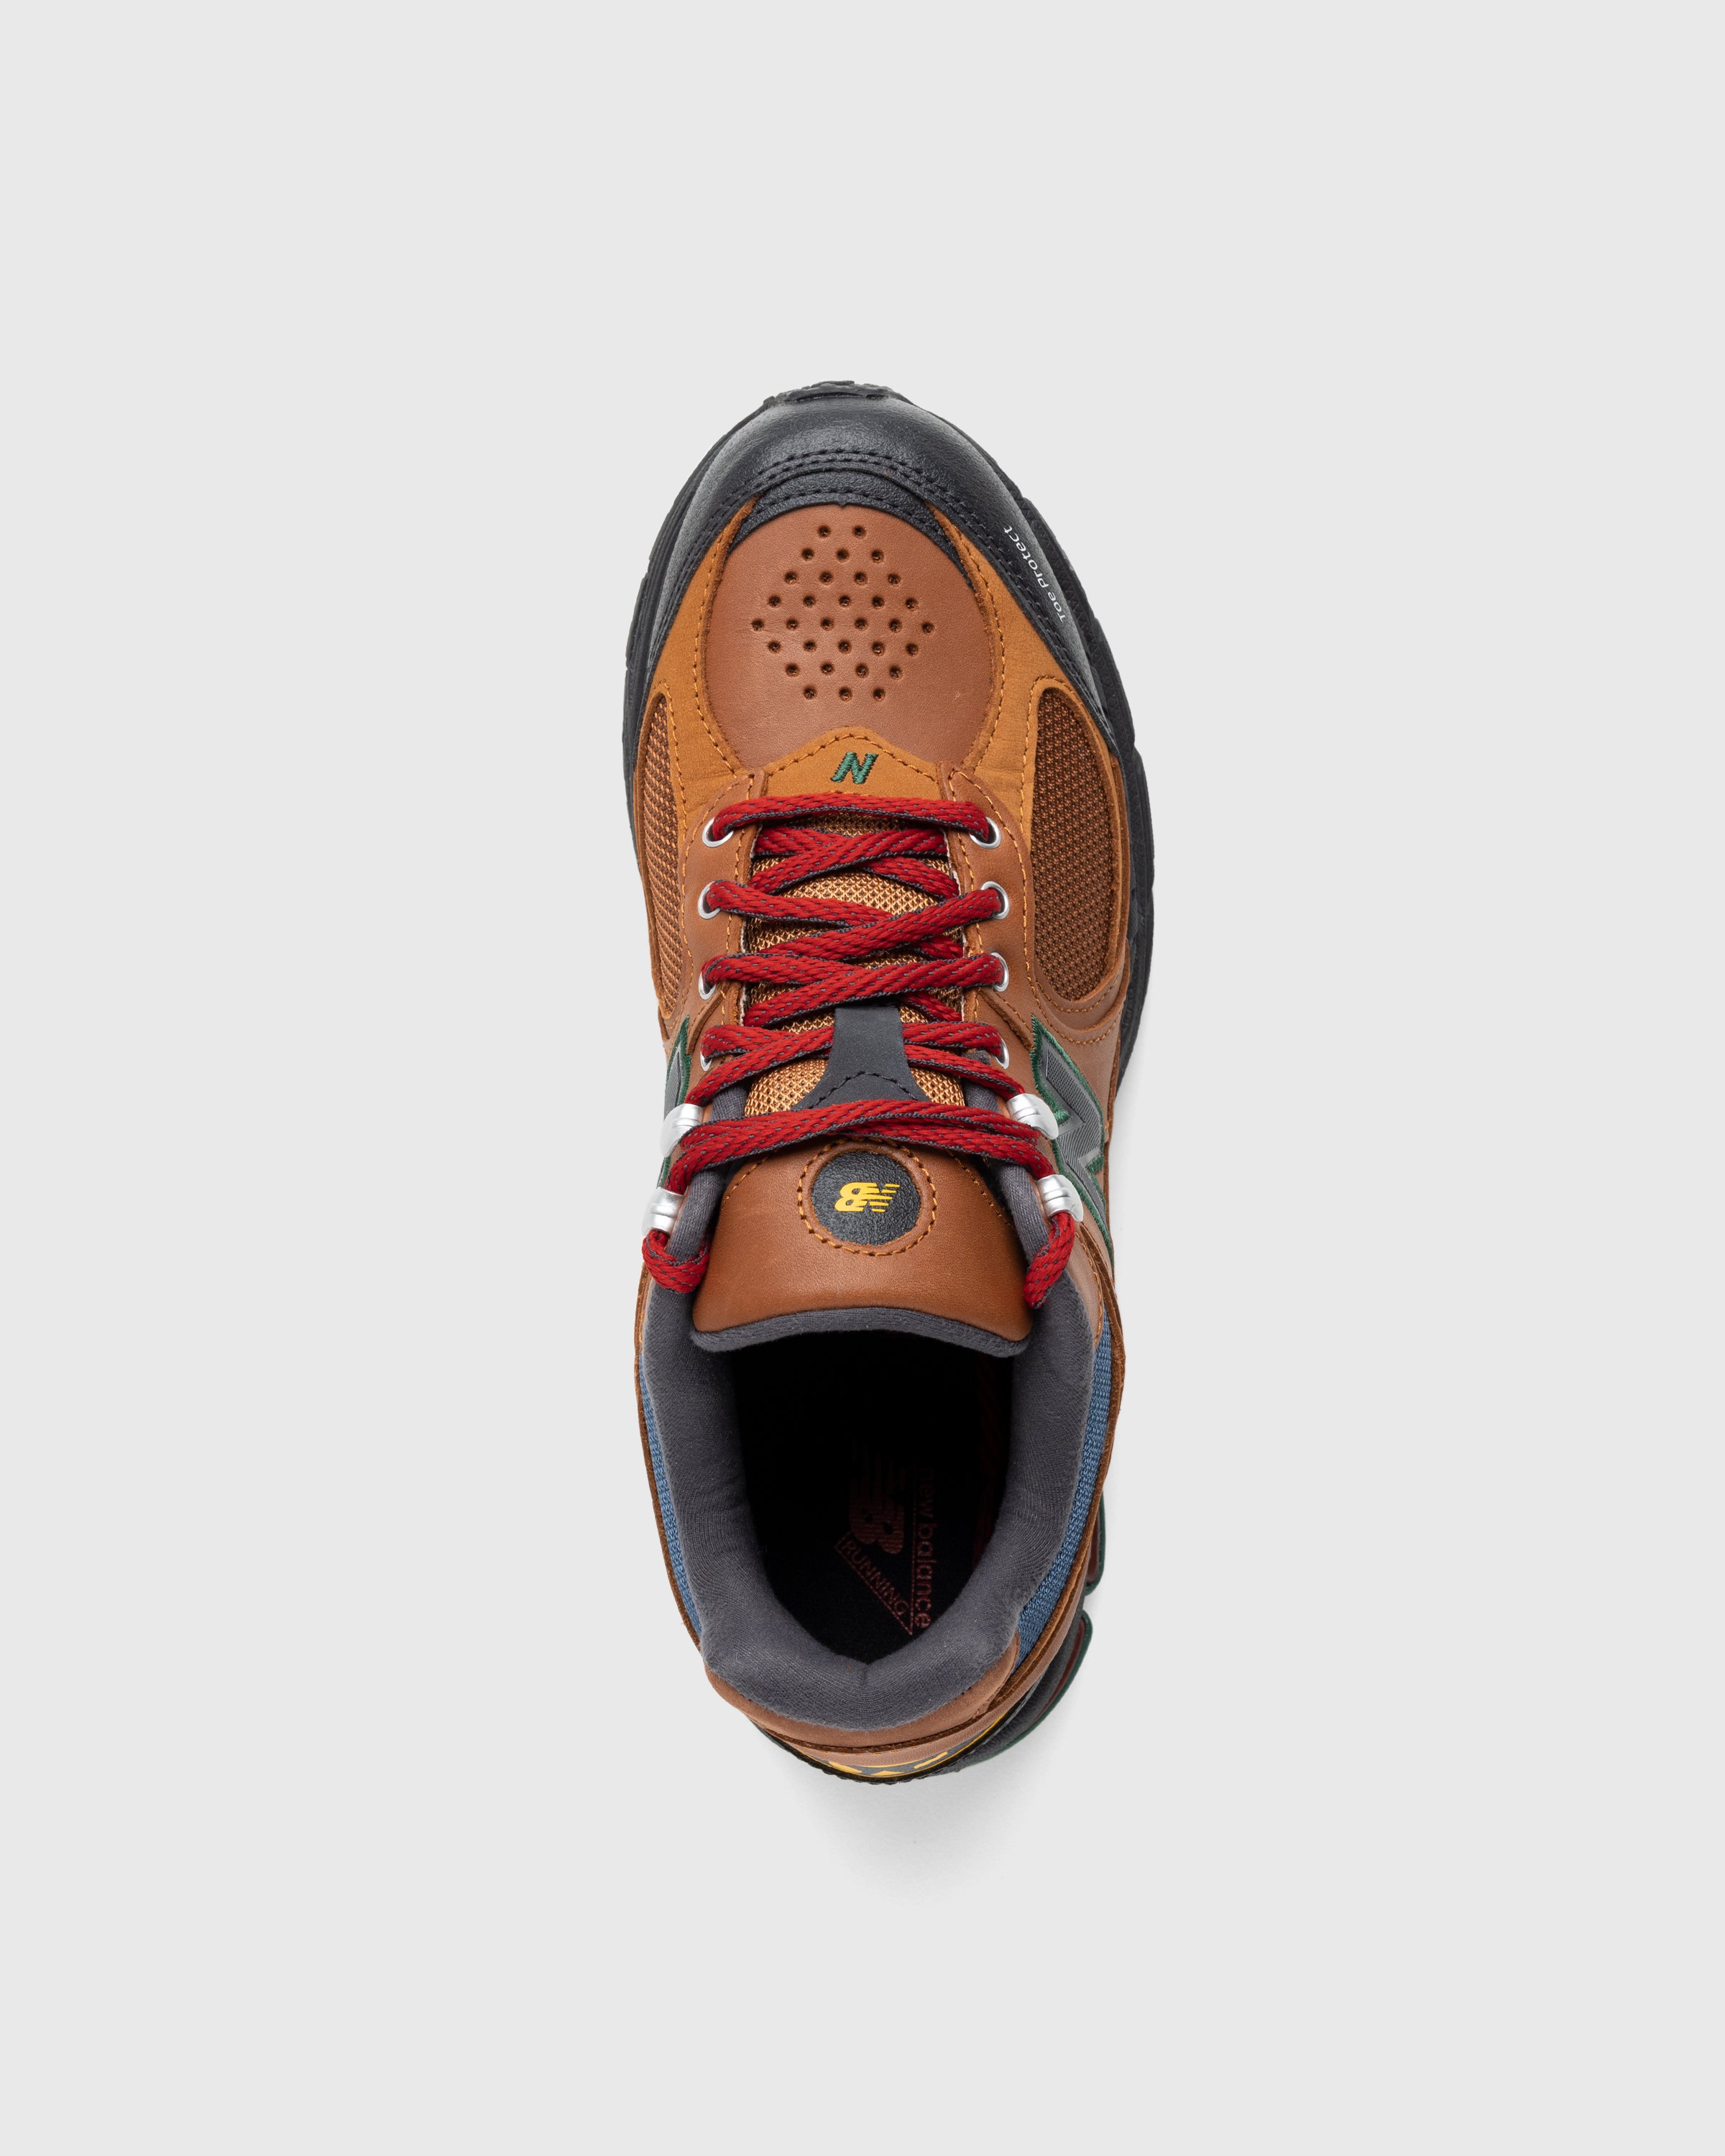 New Balance - M2002RWM Brown/Team Red - Footwear - Brown - Image 5